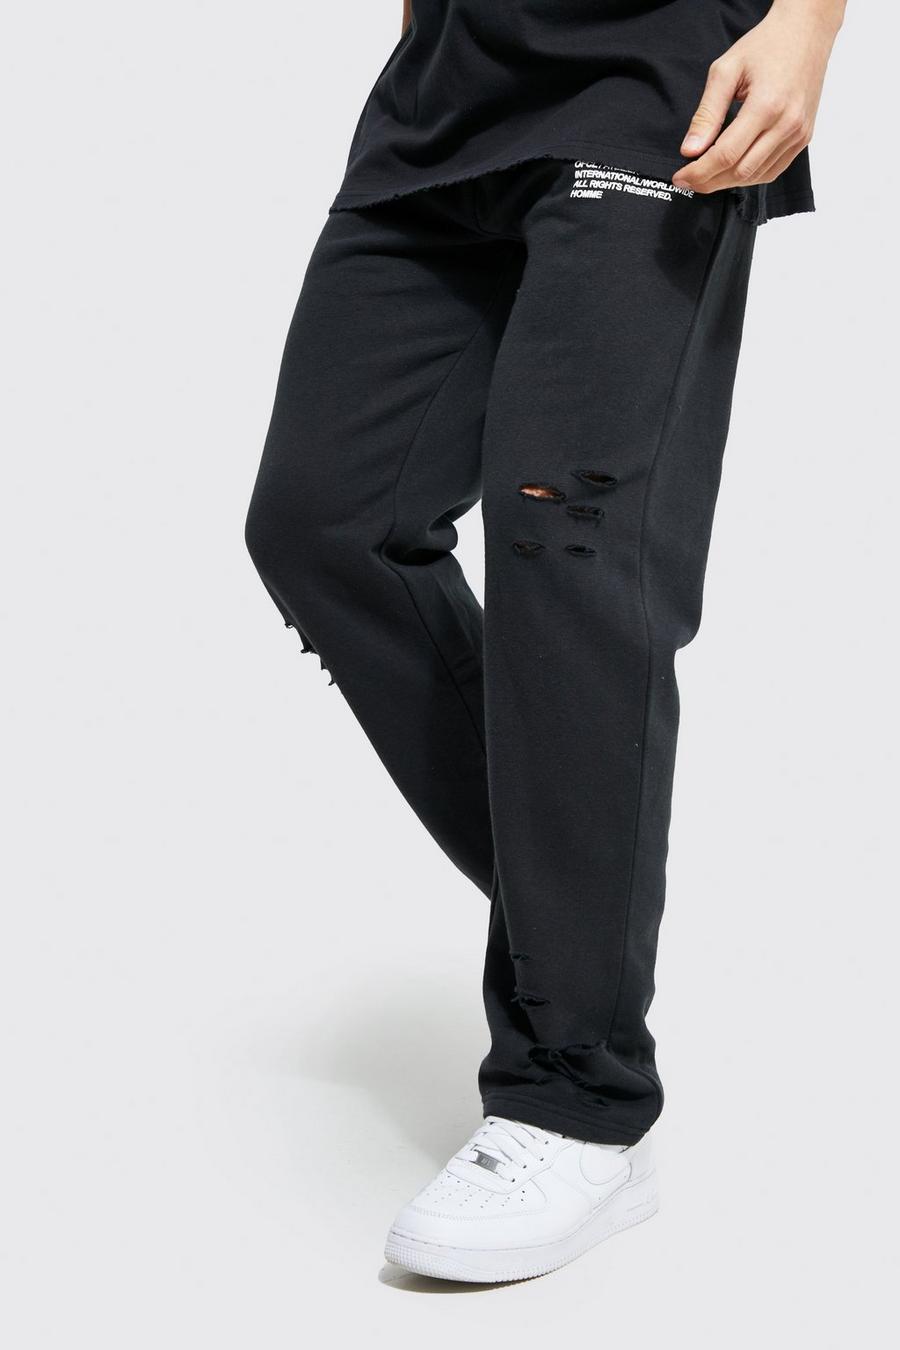 Pantaloni tuta a gamba ampia Man oversize effetto smagliato, Dark grey gris